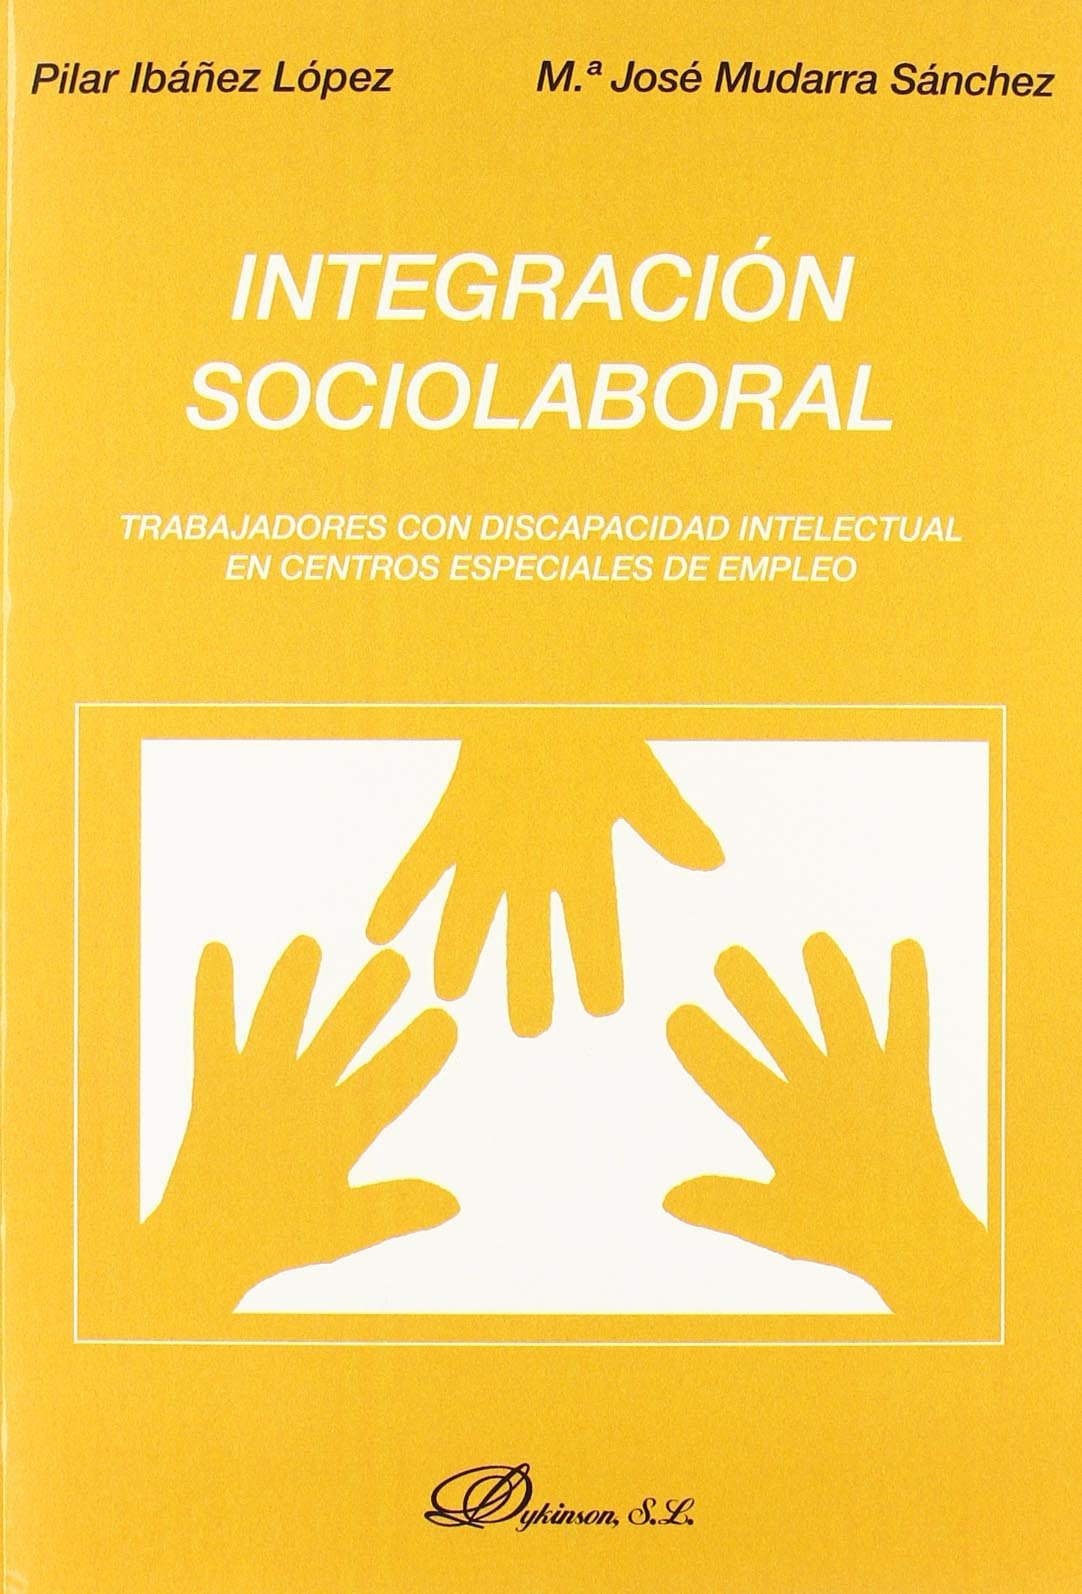 Imagen de portada del libro Integración sociolaboral